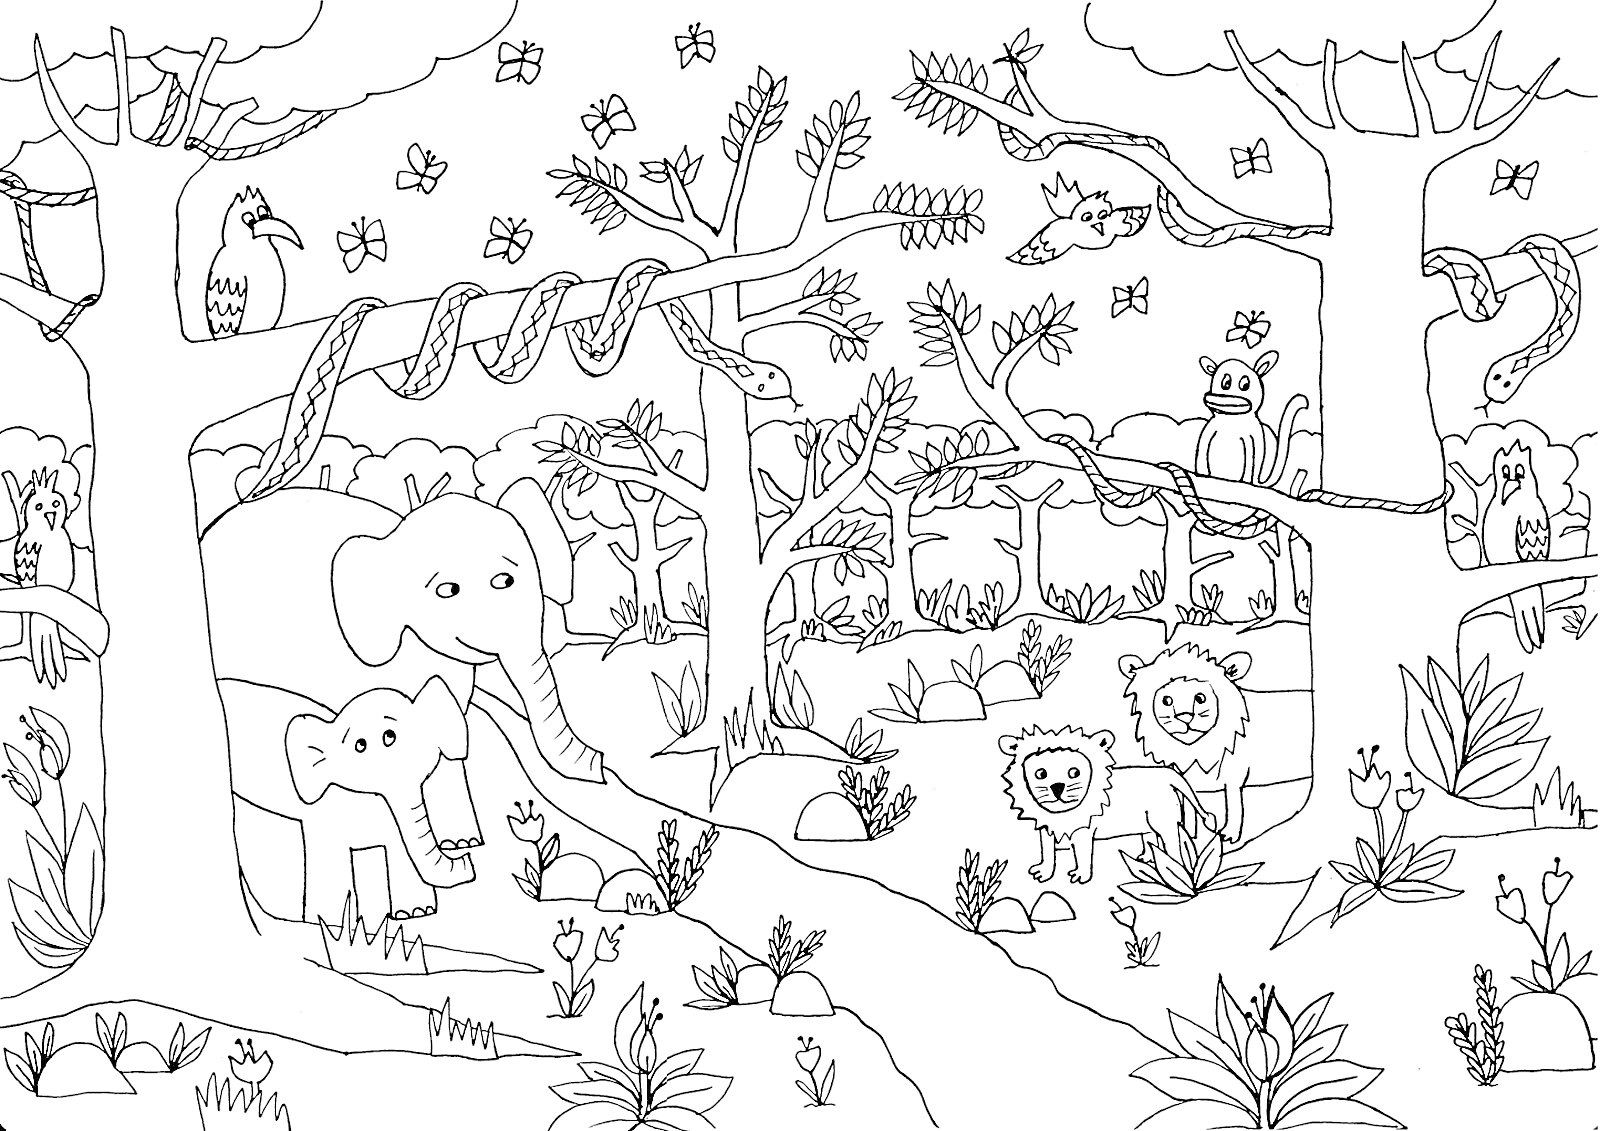 На раскраске изображено: Джунгли, Львы, Природа, Растения, Деревья, Кусты, Лианы, Животные, Слон, Бабочка, Змеи, Обезьяны, Попугаи